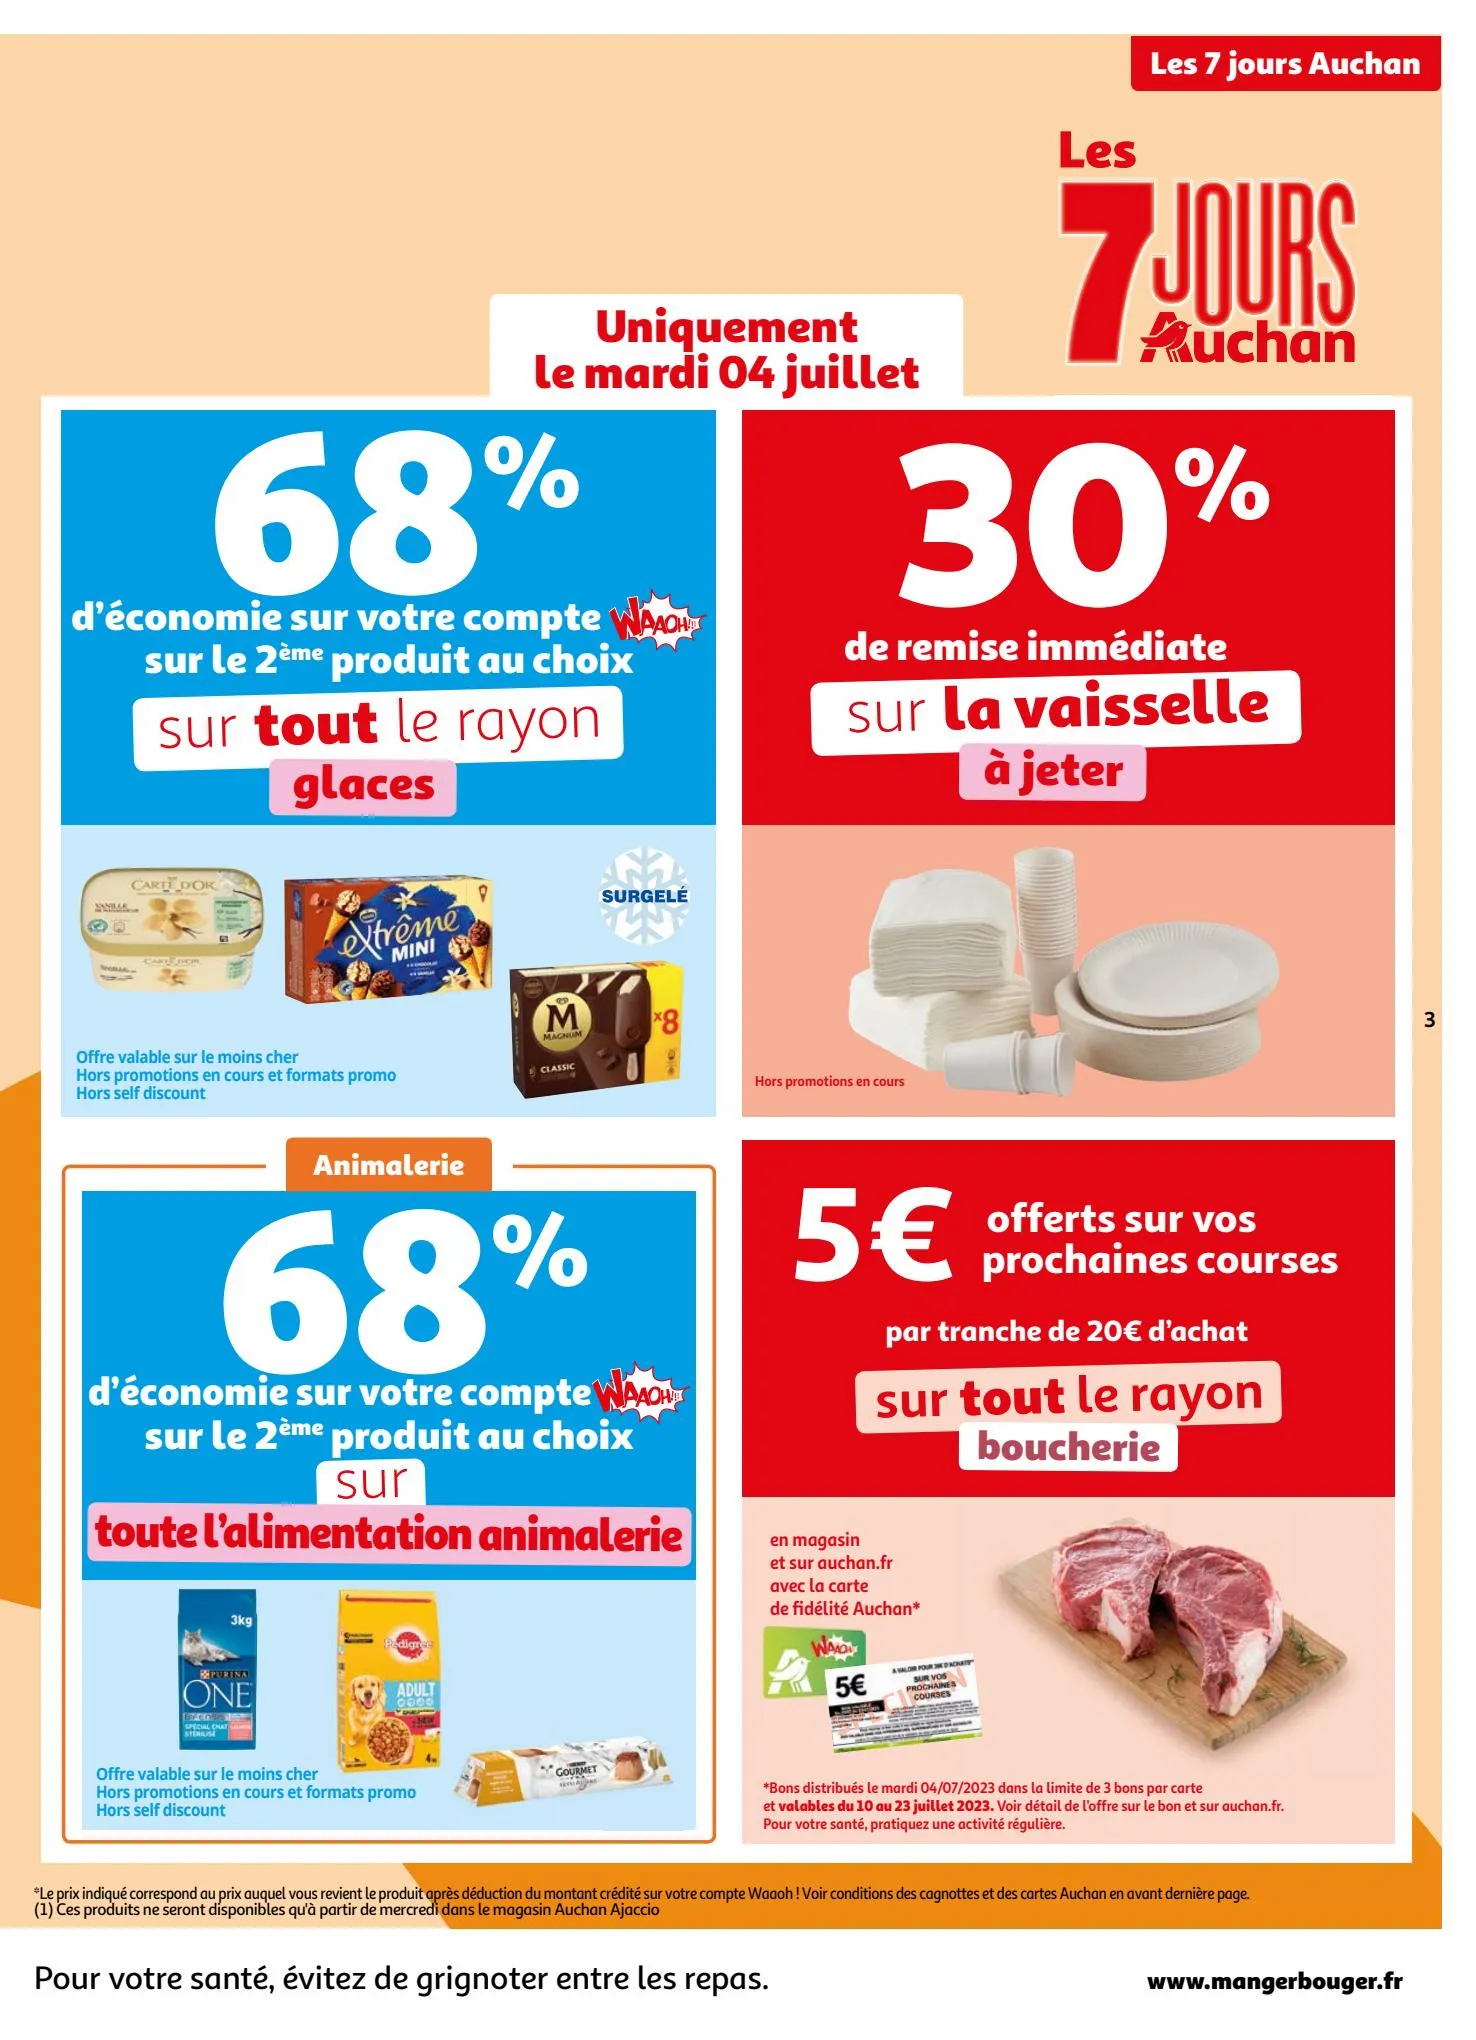 Catalogue Les 7 jours Auchan, page 00003